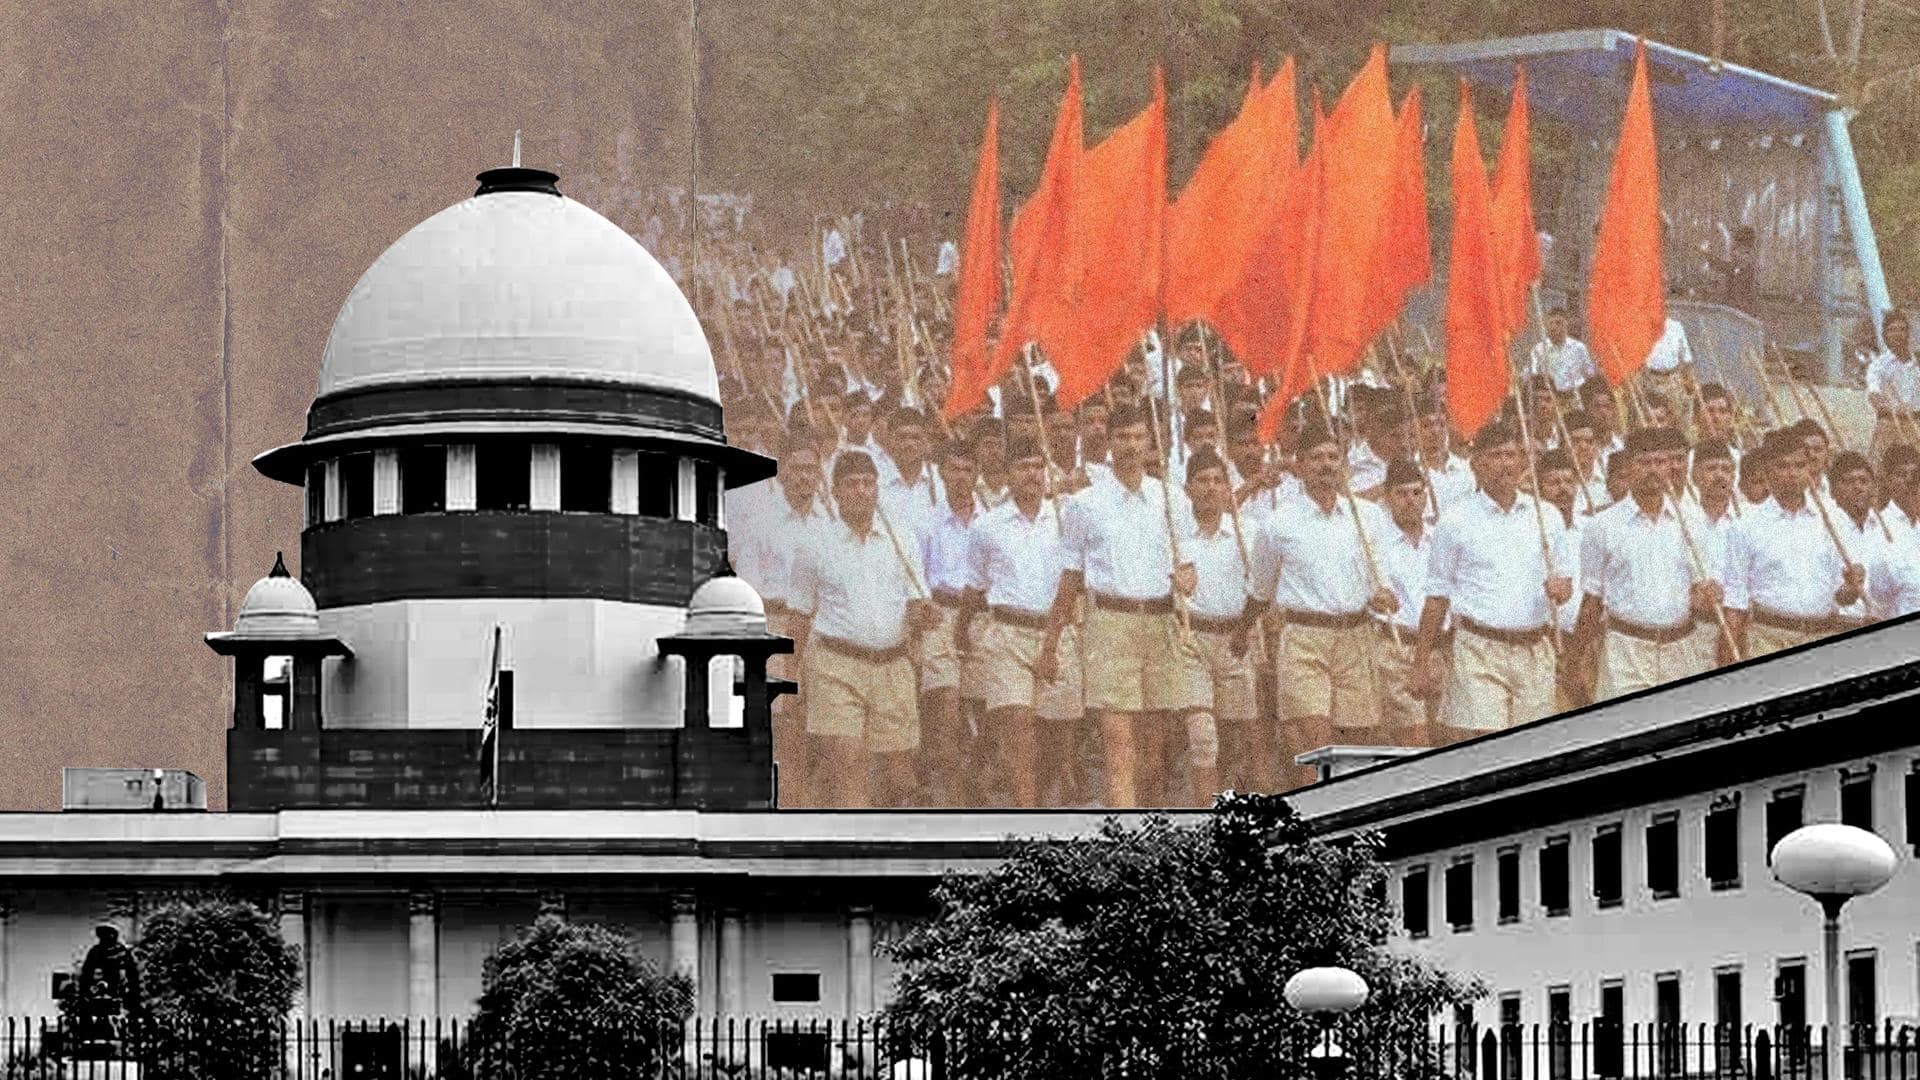 Tamil Nadu: Supreme Court allows RSS march, dismisses government's plea